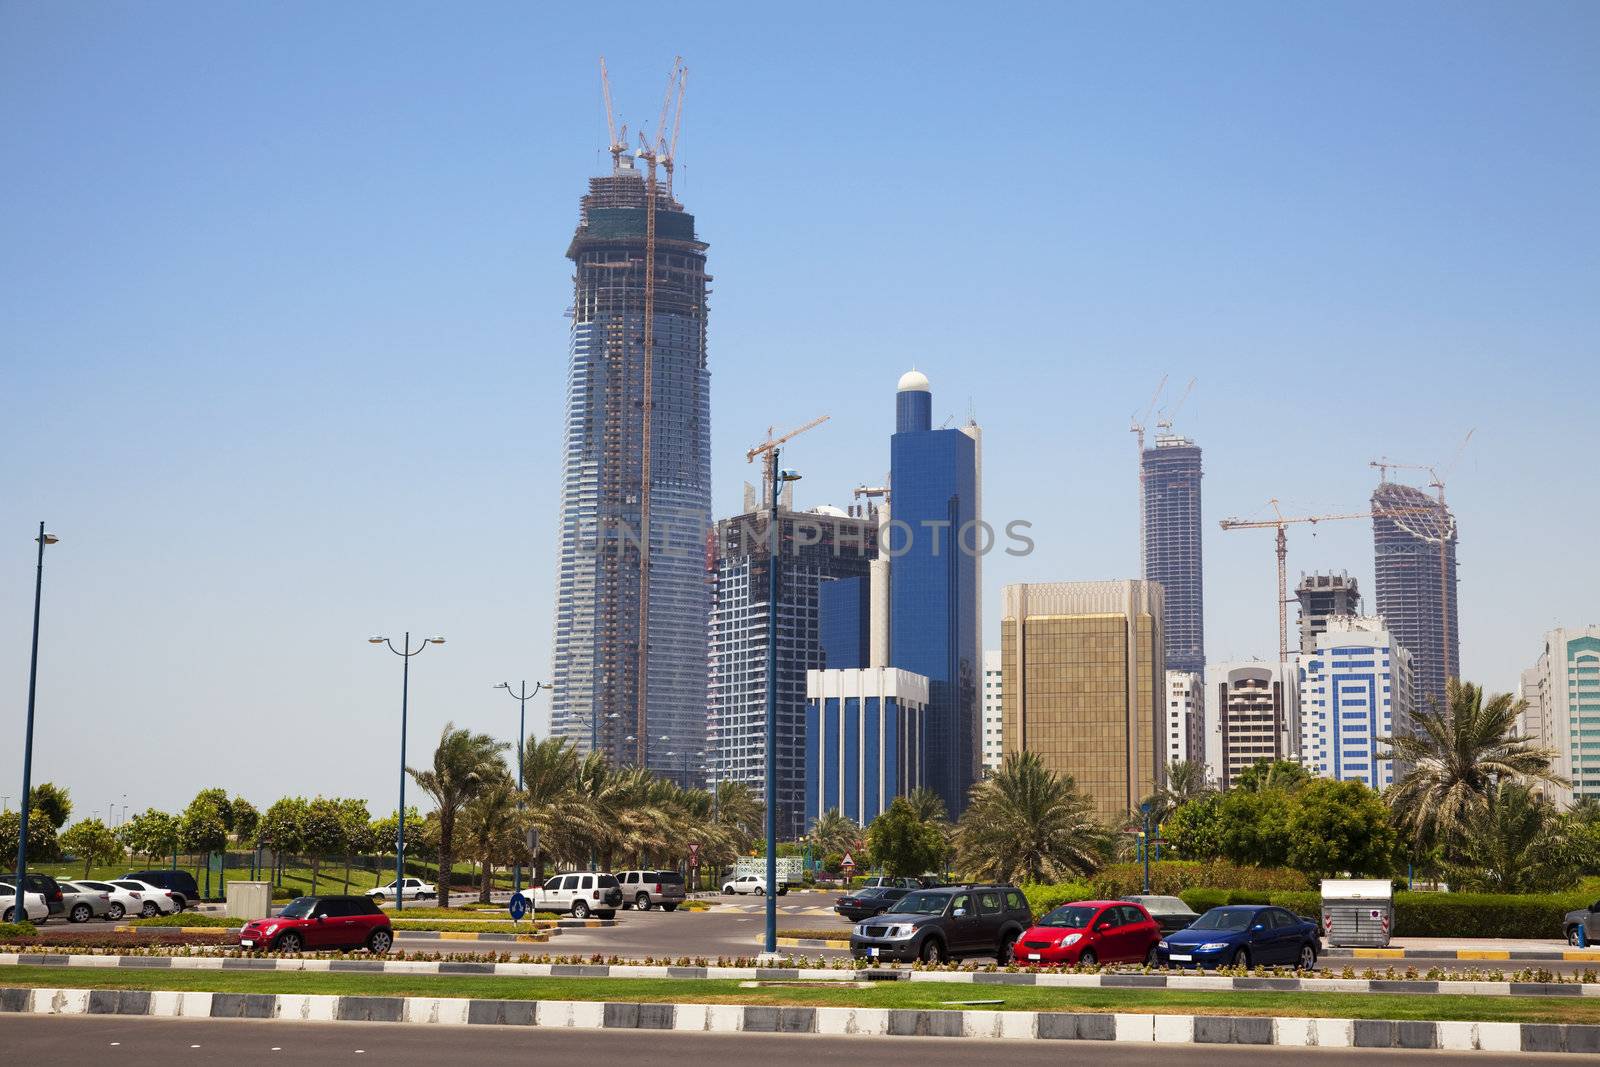 Abu Dhabi Skyline, UAE by shariffc